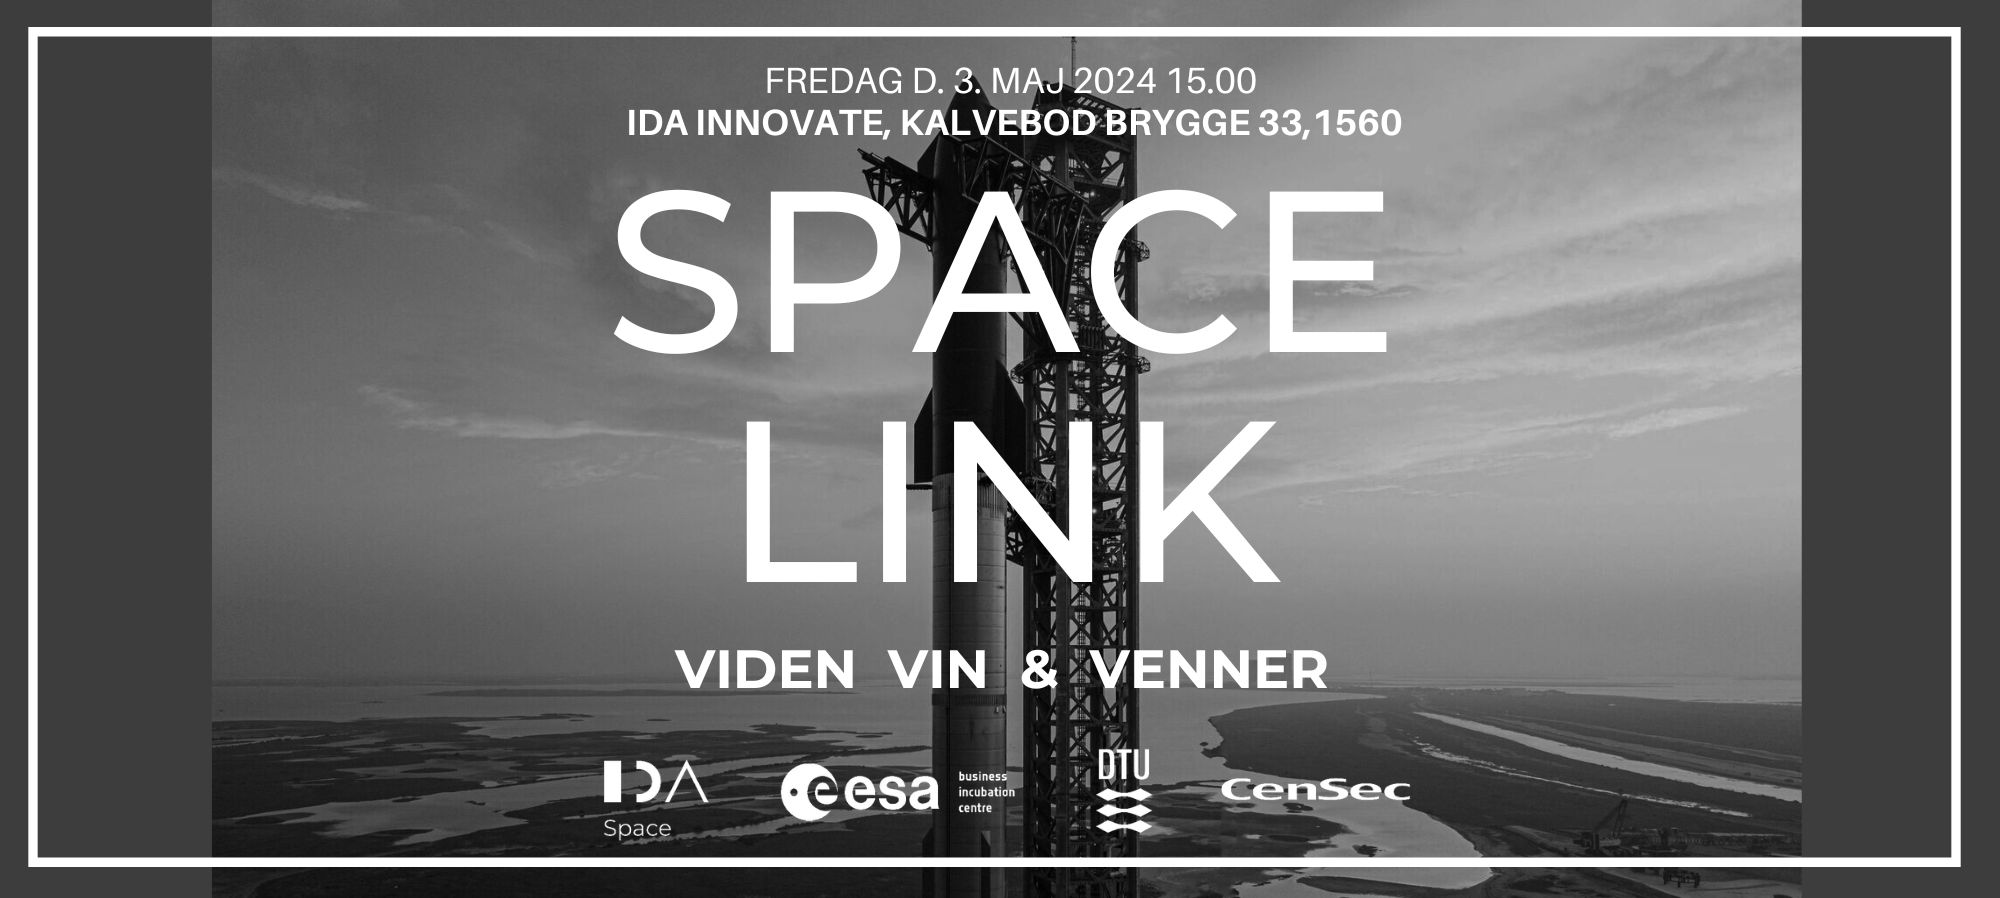 Space Link - Viden, vin & venner